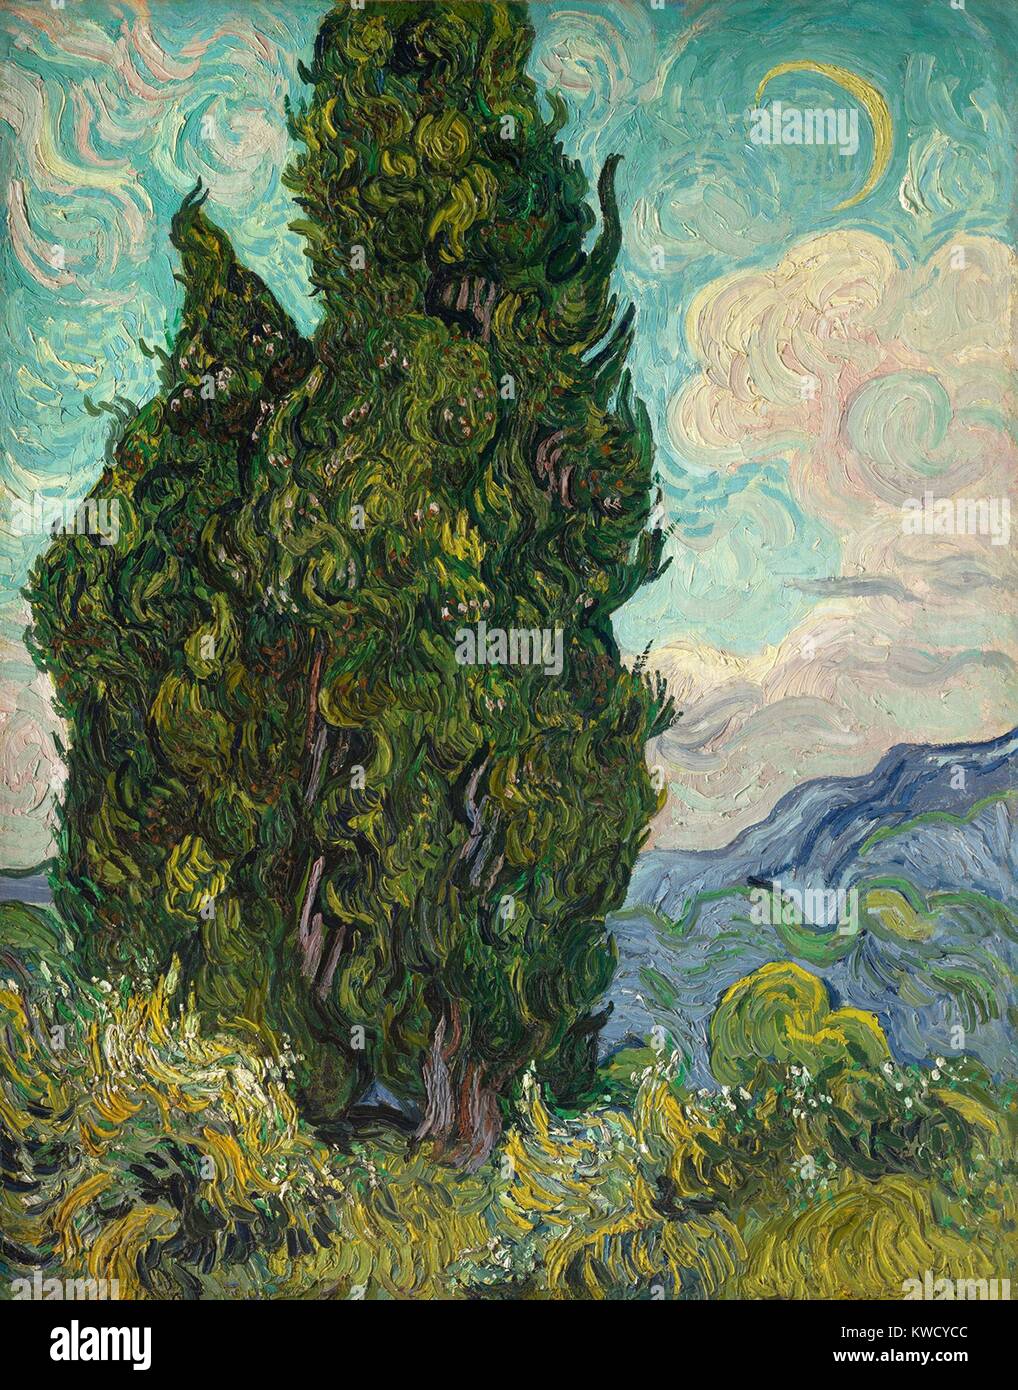 Cyprès, par Vincent Van Gogh, 1889, Dutch Postimpressionnistes, huile sur toile. Van Gogh décrit le cyprès comme l'obscurité dans un paysage baigné de soleil. Il a été montré dans le Salon des Indépendants à Paris en 1890. (BSLOC 2017 5 54) Banque D'Images